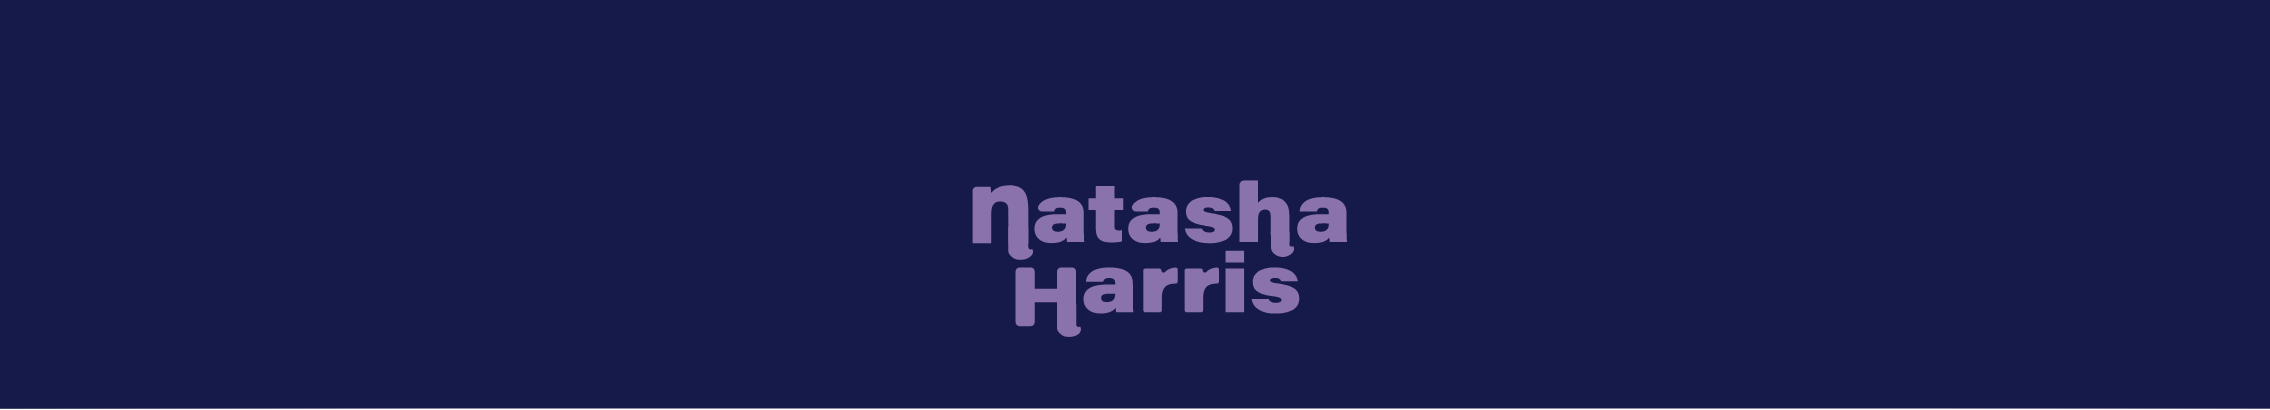 Natasha Harris's profile banner